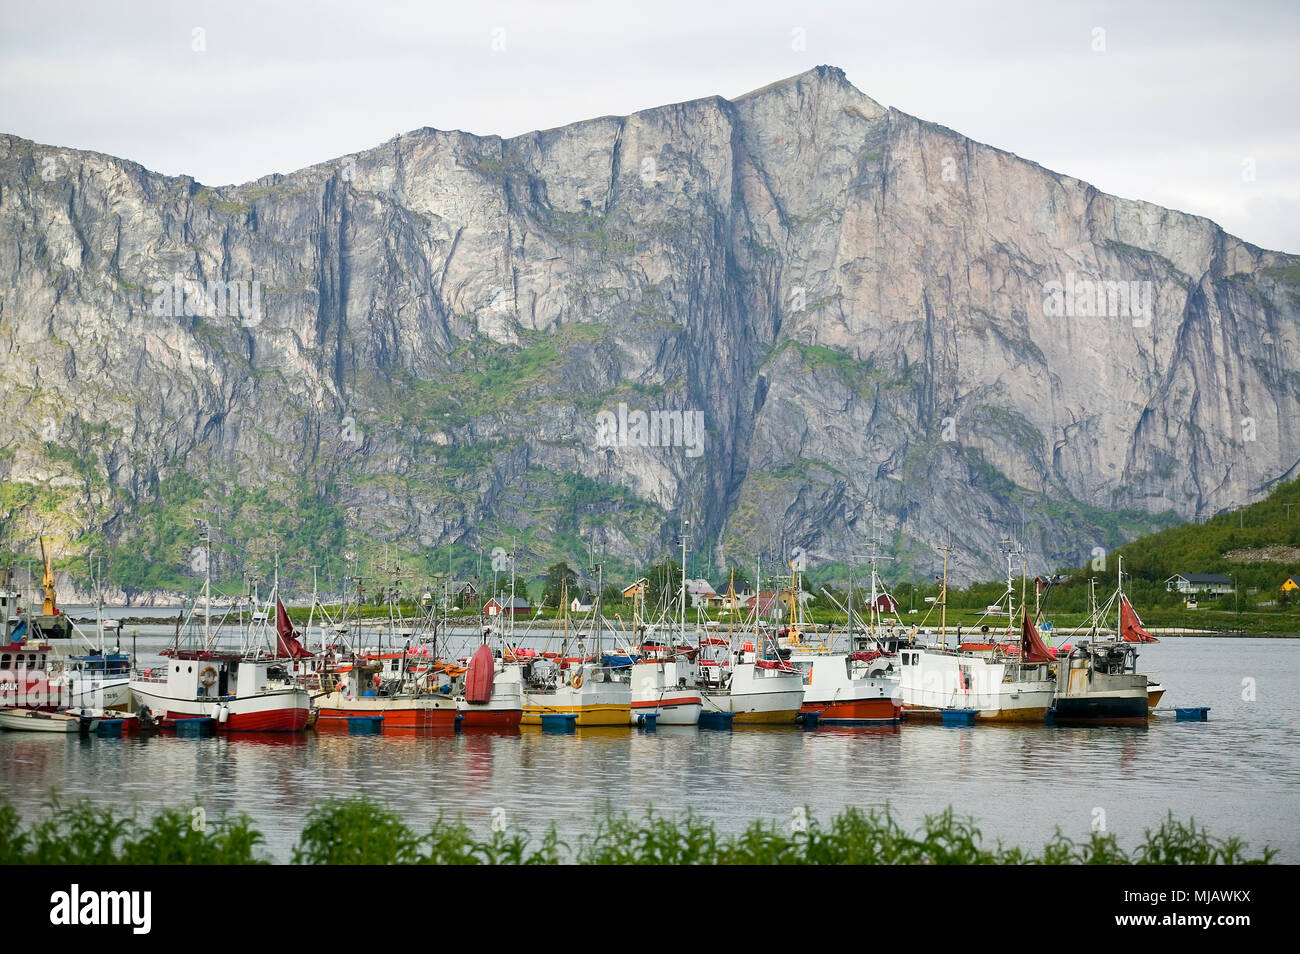 Fischerboote, Insel Senja, Norwegen Foto de stock